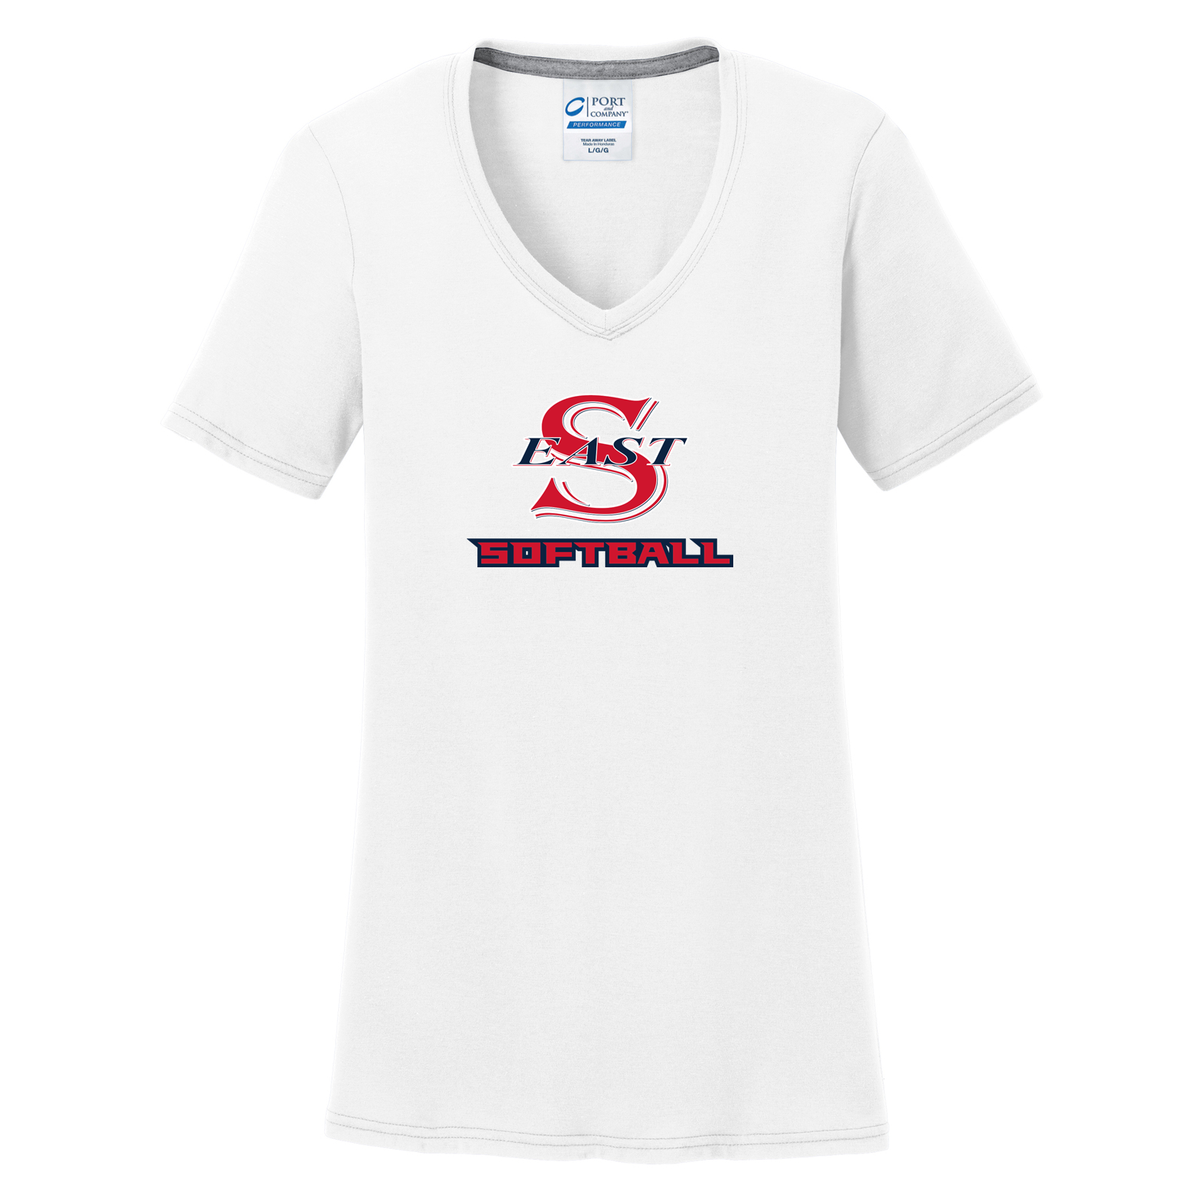 Smithtown East Softball Women's T-Shirt